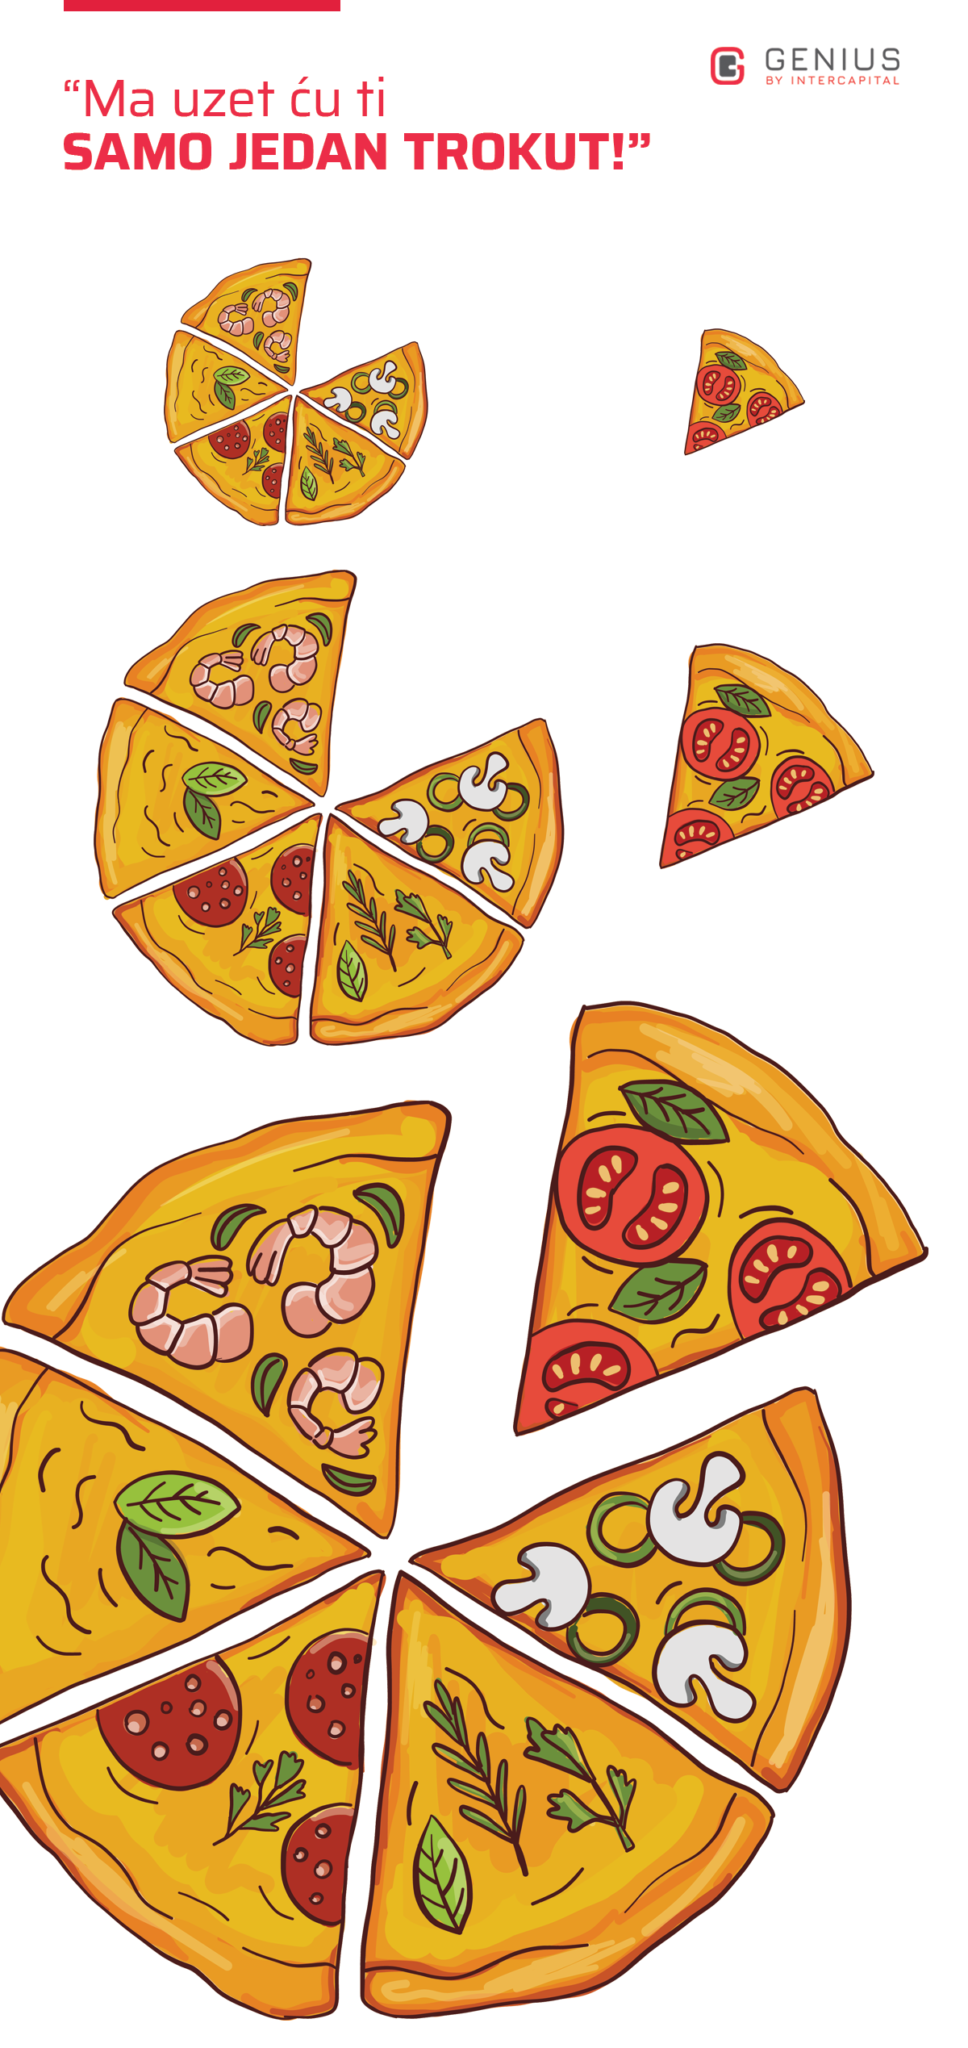 investicijski fondovi - trokut pizze je veći što je pizza veća, kao što je 5% od uloženog iznosa sve veće kako iznos raste